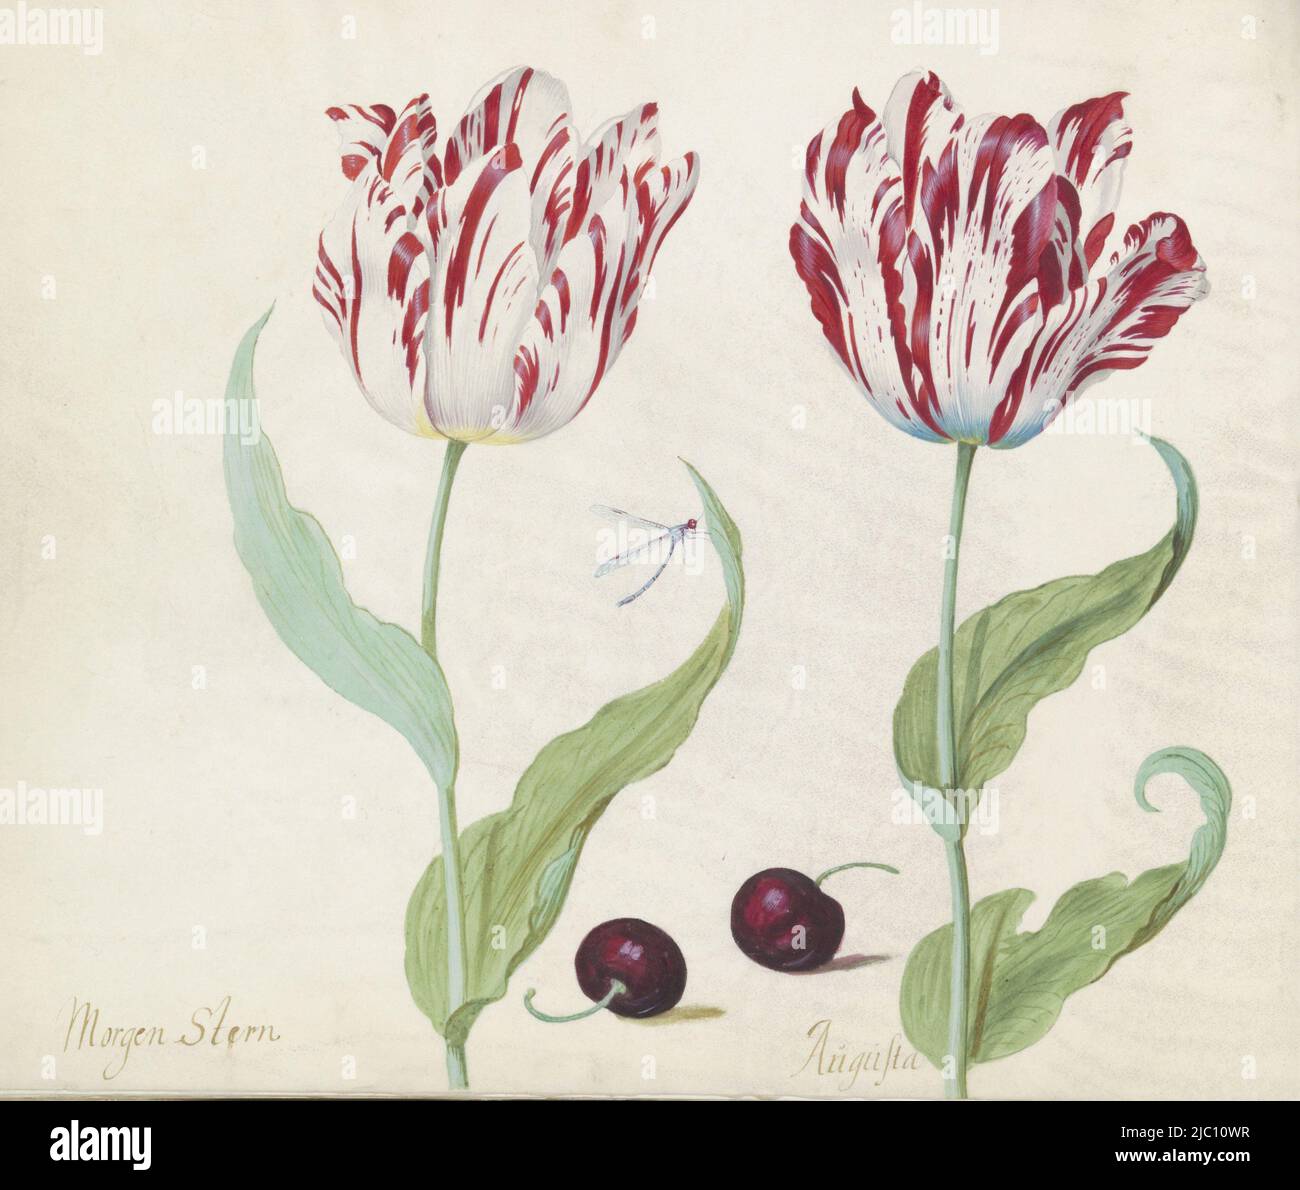 Le dessin fait partie d'un album, deux tulipes avec deux morilles et damselfly Morgen Stern / Augusta., dessinateur: Jacob Marrel, 1637, parchemin (matériel animal), pinceau, h 265 mm × l 335 mm Banque D'Images